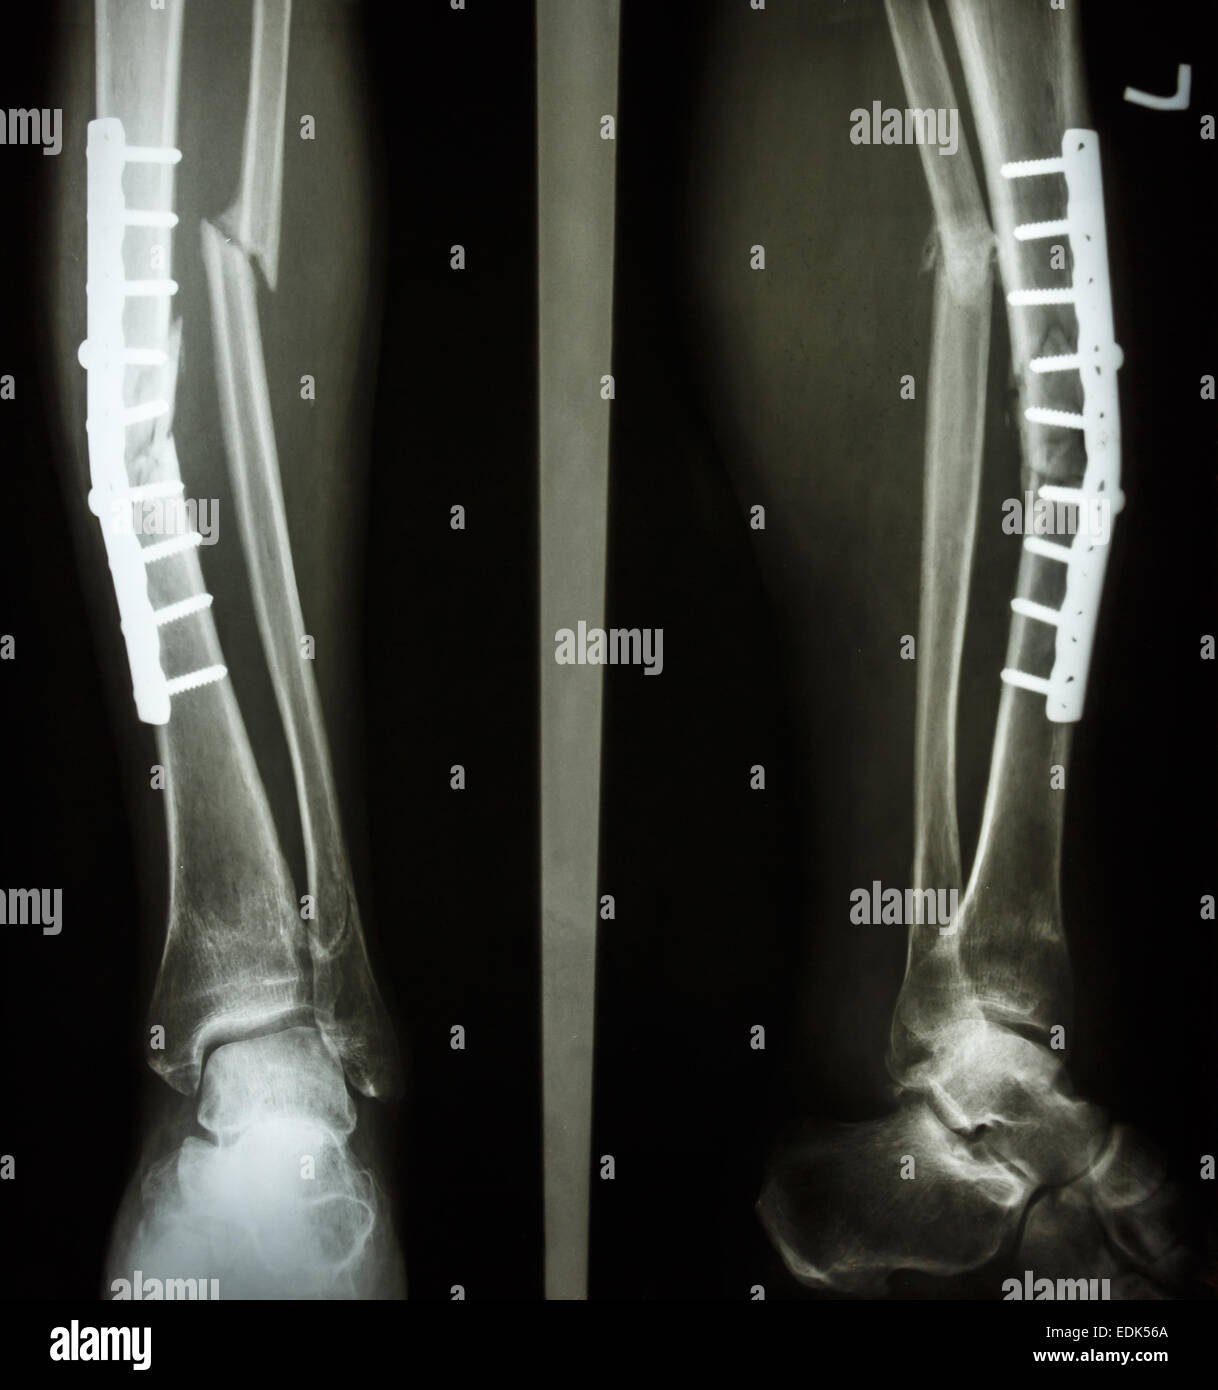 AP/seitliche Bein Film: Fraktur Welle von Tibia und Fibuladefekt (Beinknochen) zu zeigen. Patient wurde operiert und legen Sie die Platte und Schraube für Stockfoto